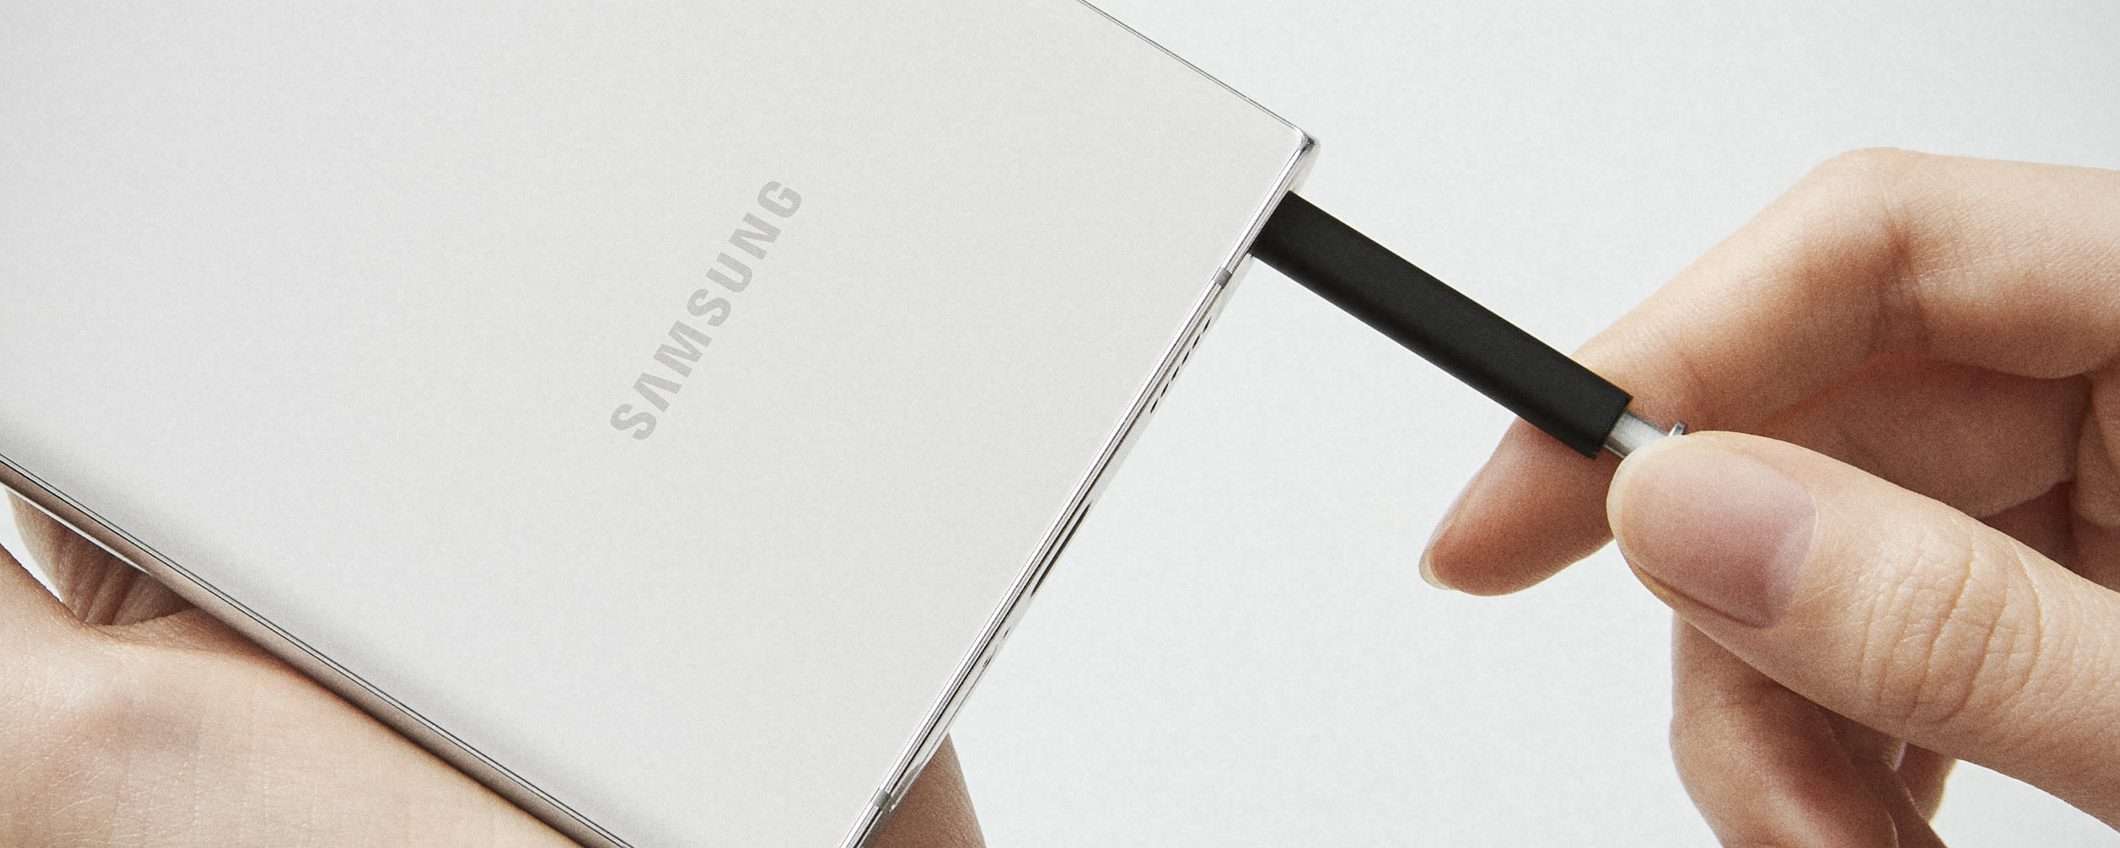 Samsung rallenterà la produzione degli smartphone